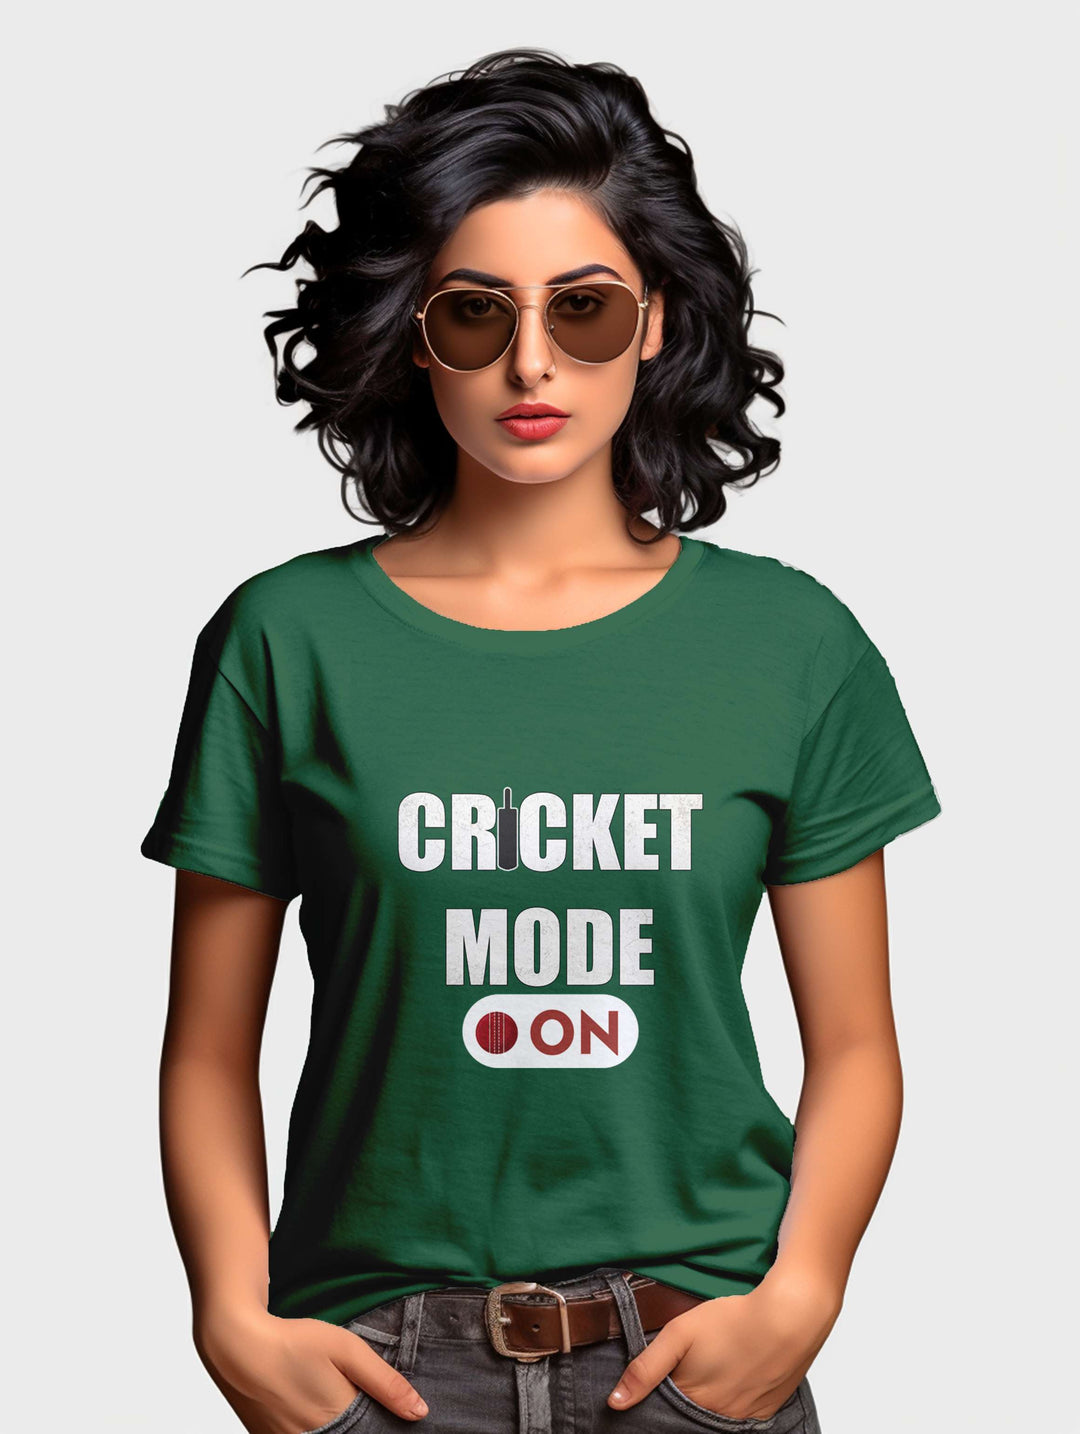 Women's Cricket Mode On tee